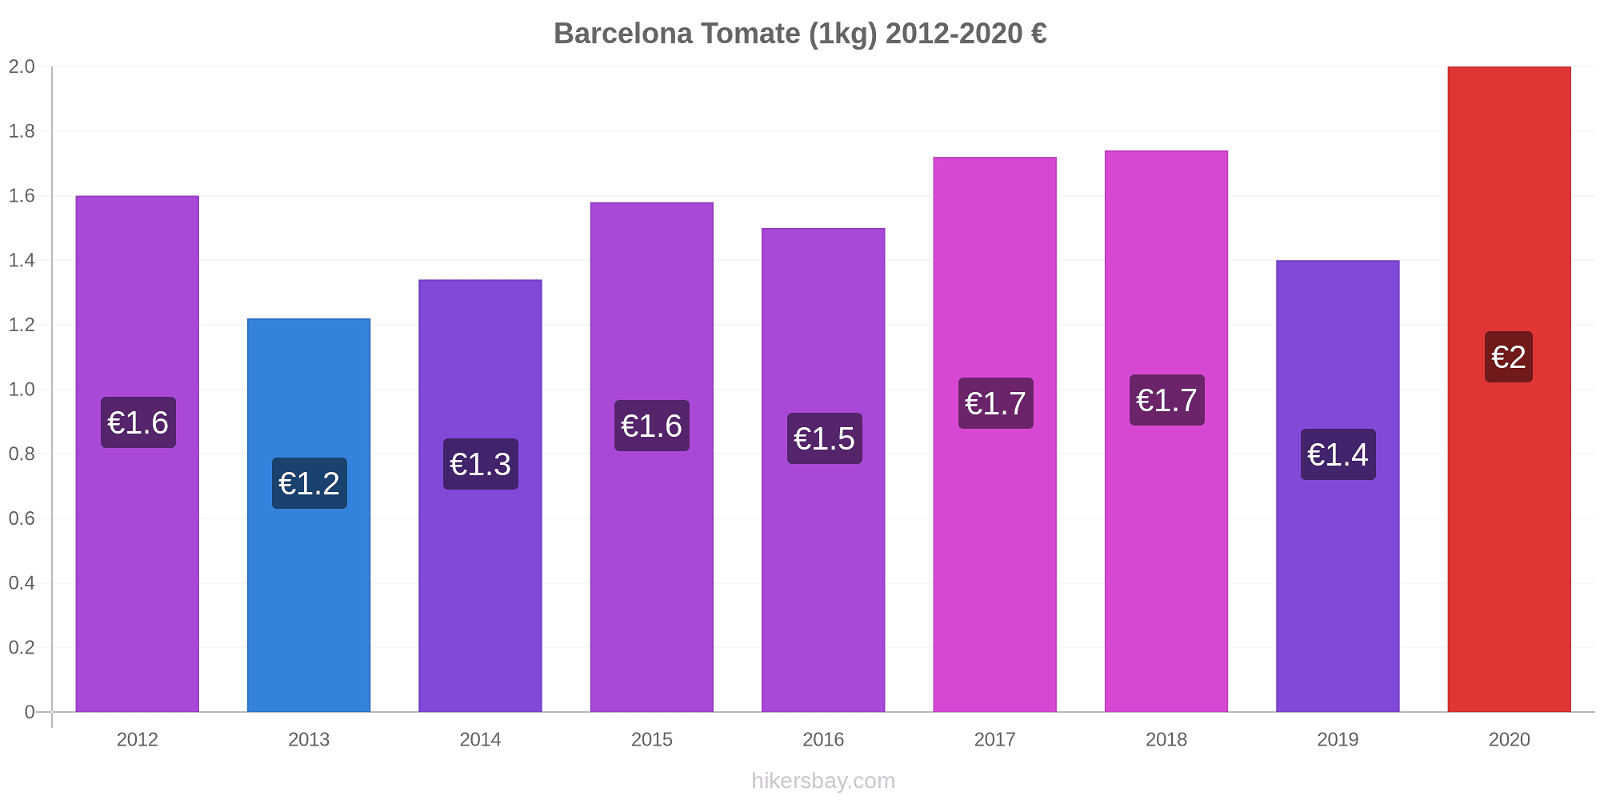 Barcelona variação de preço Tomate (1kg) hikersbay.com